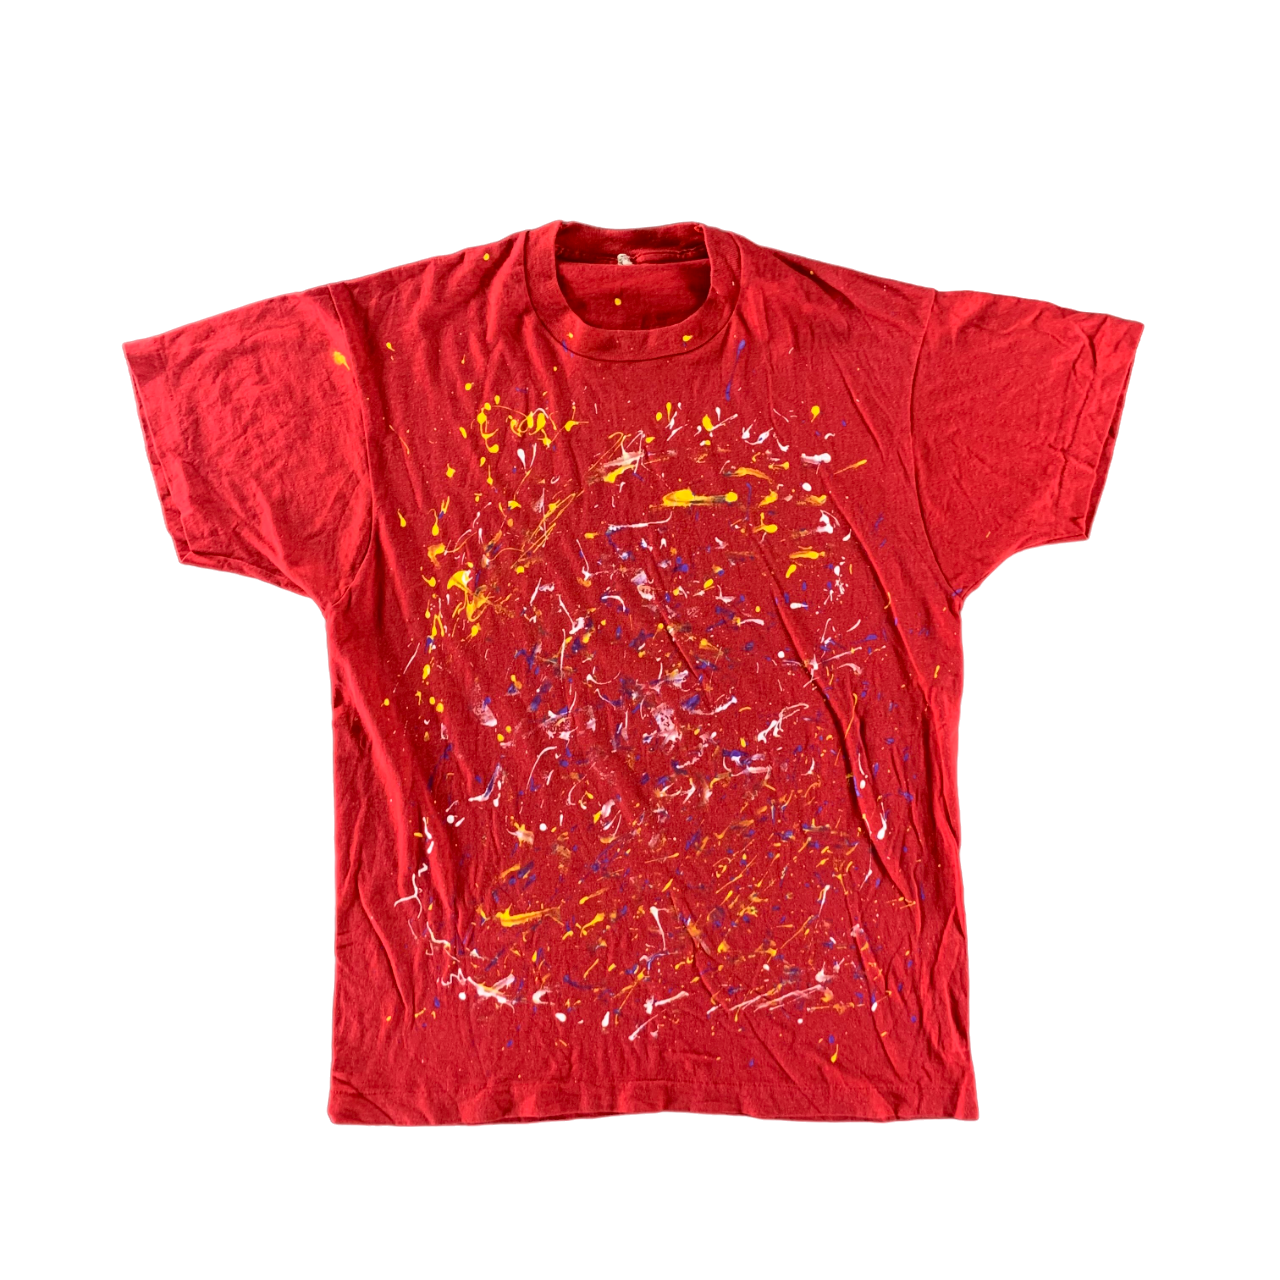 Vintage 1980s Splatter Paint T-shirt size Large